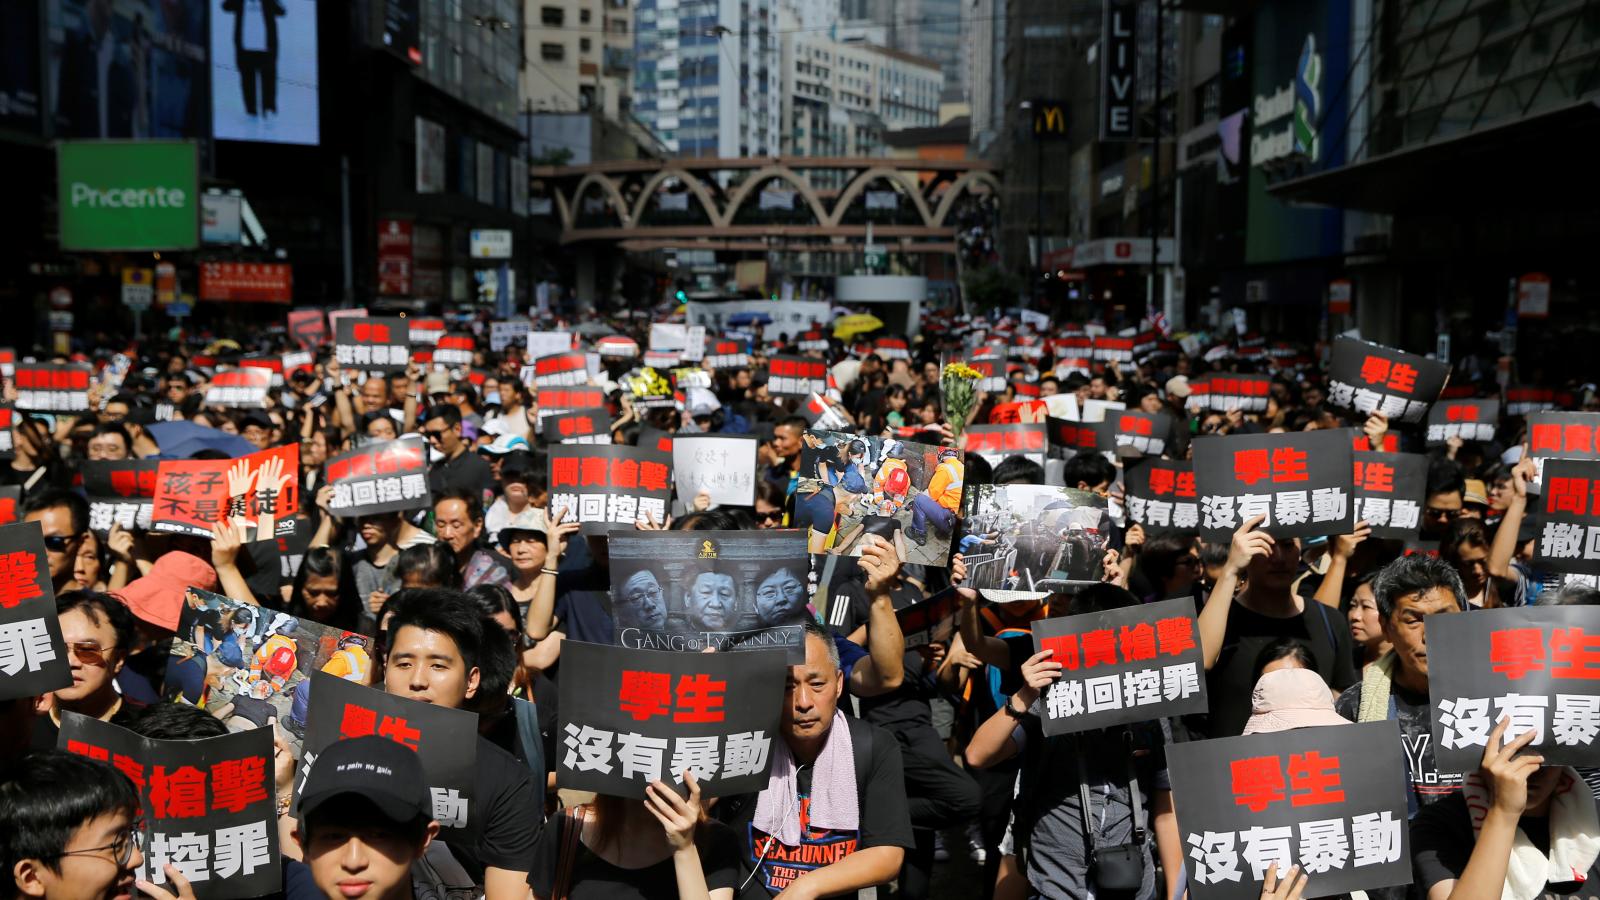 Les manifestants dans les rues de Hong Kong expriment leur colère (c) Thomas Peter/Reuters